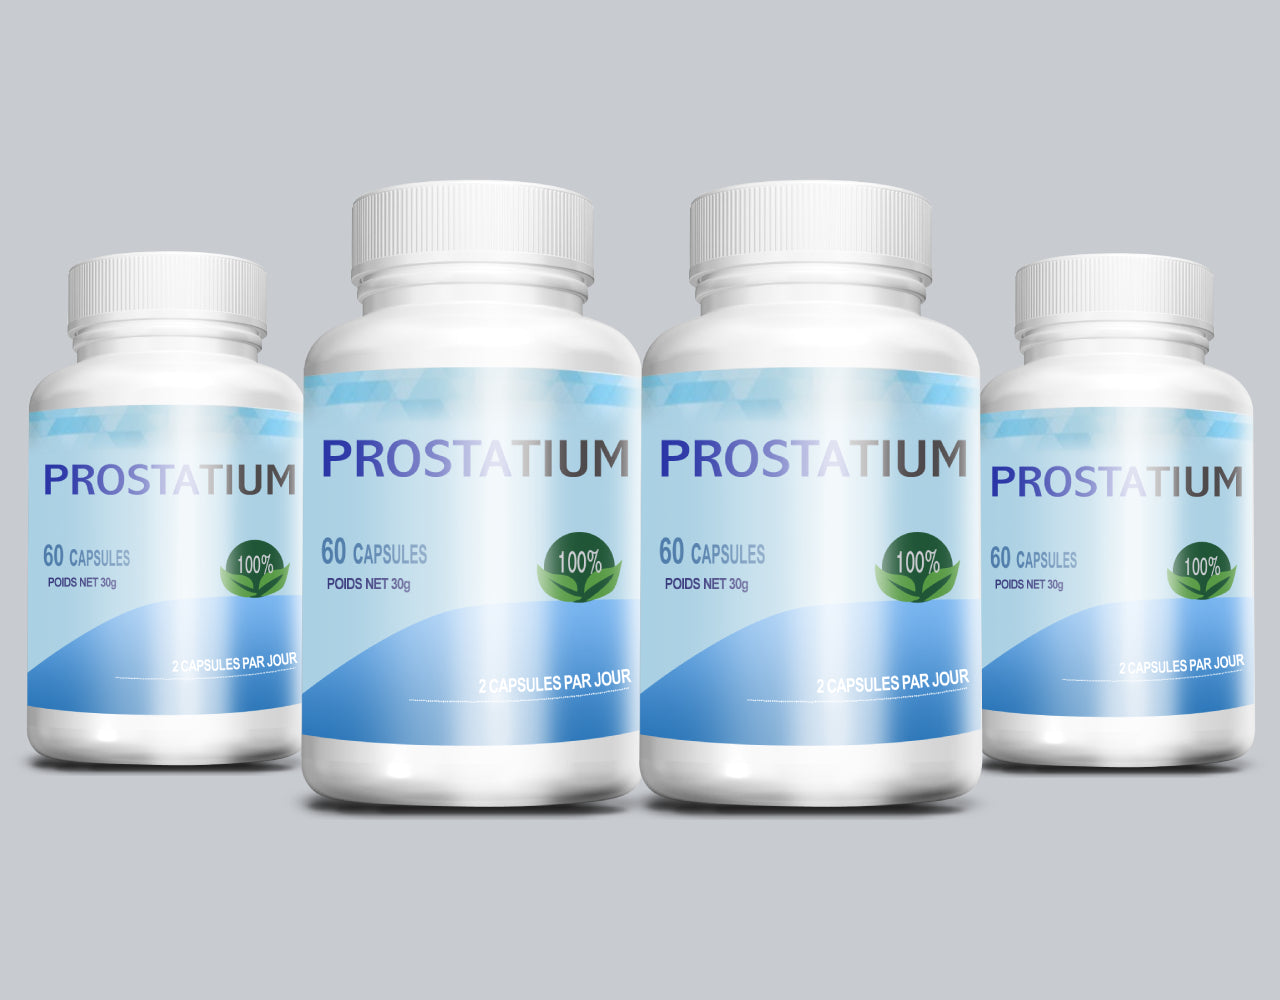 Prostatium